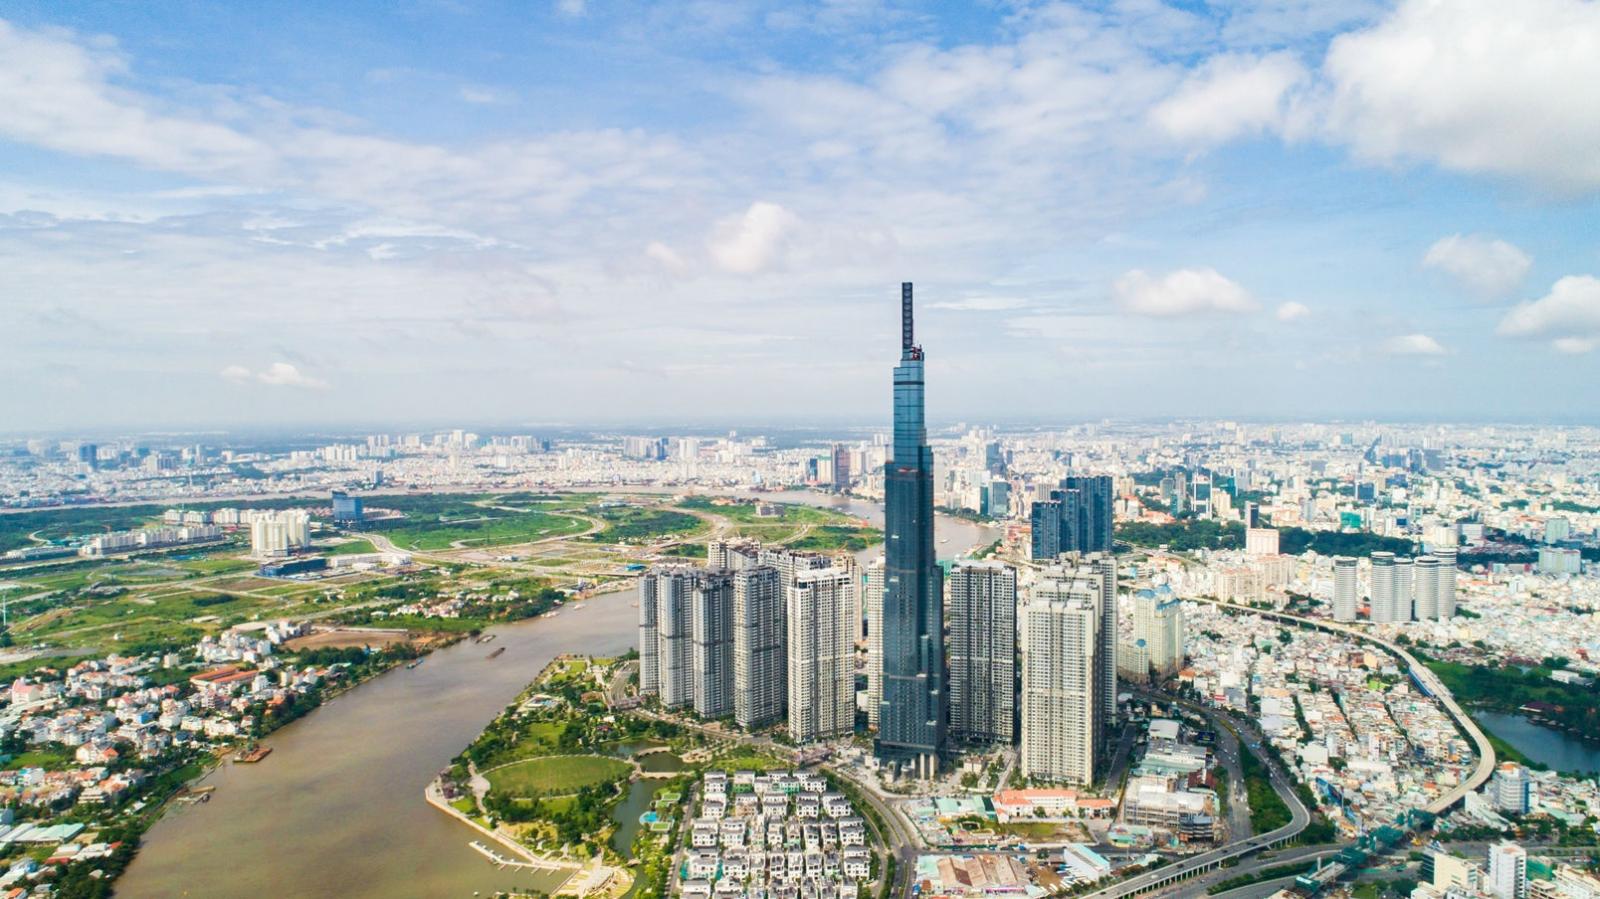 hình ảnh một góc TP.HCM nhìn từ trên cao với những tòa nhà cao chọc trời, khu dân cư thấp tầng, cây xanh, sông nước